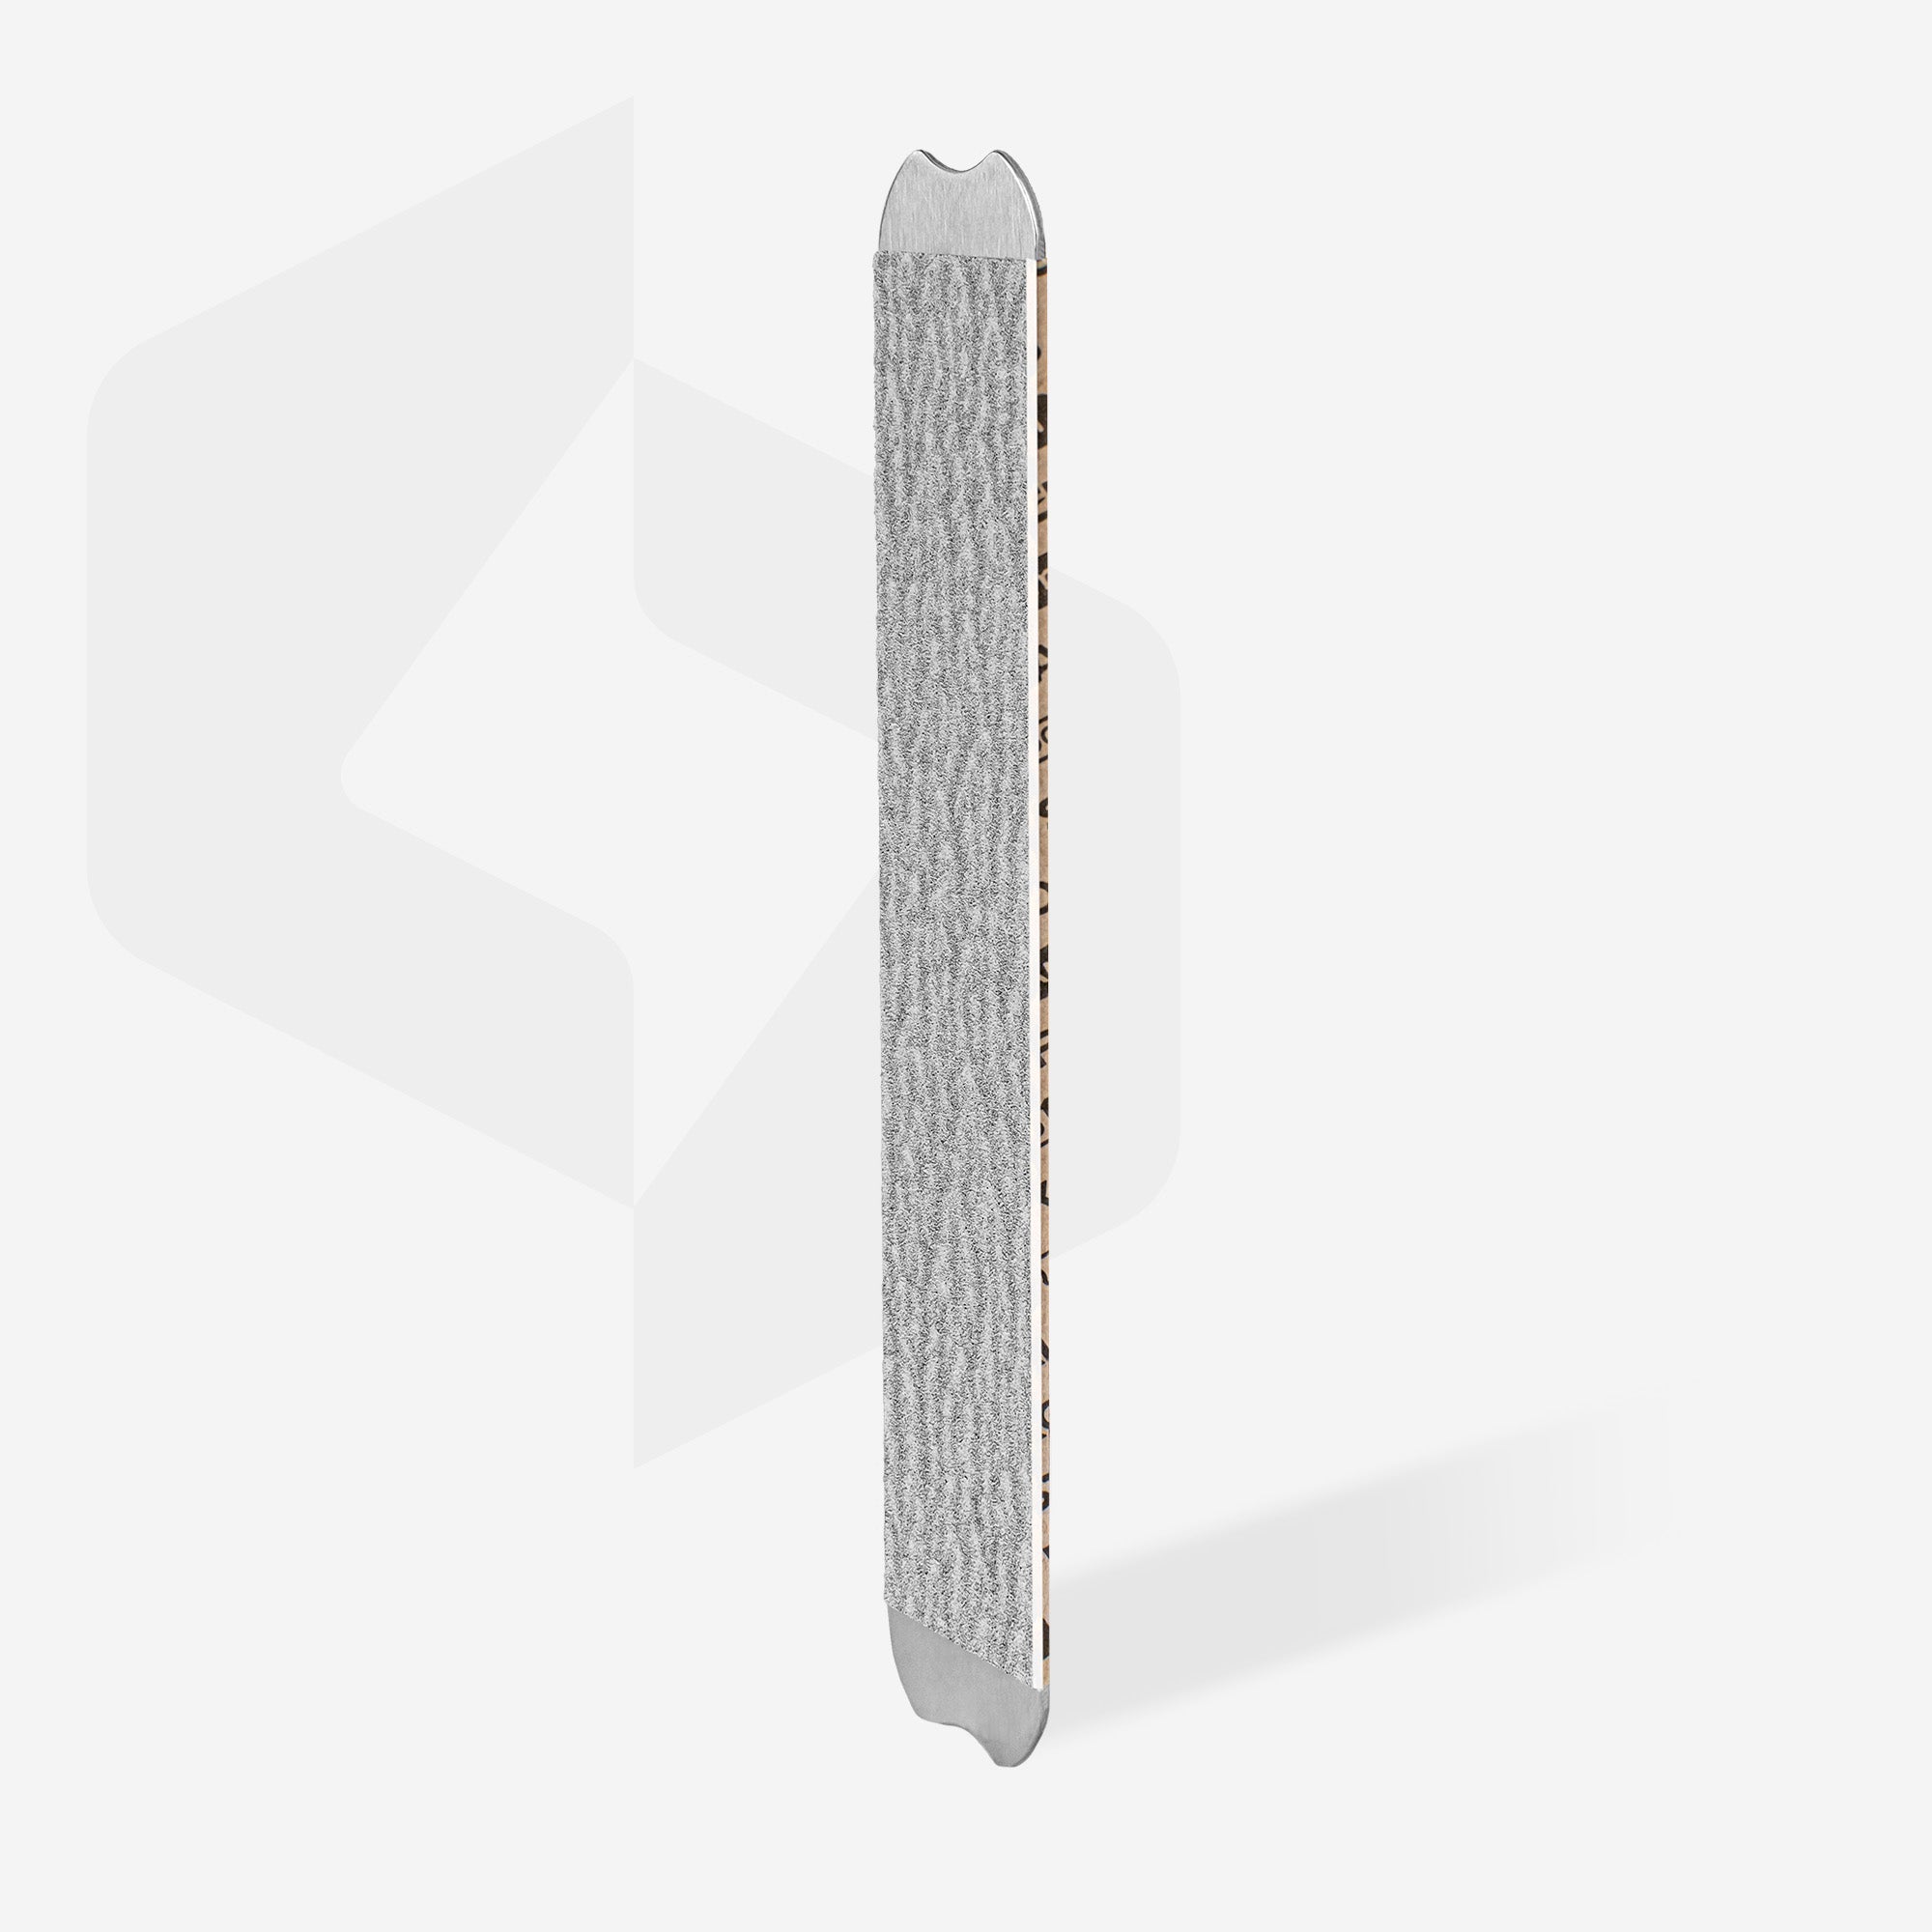 Jednorázové pilníky papmAm (měkký základ) pro rovný pilník SMART 20 (30 ks)